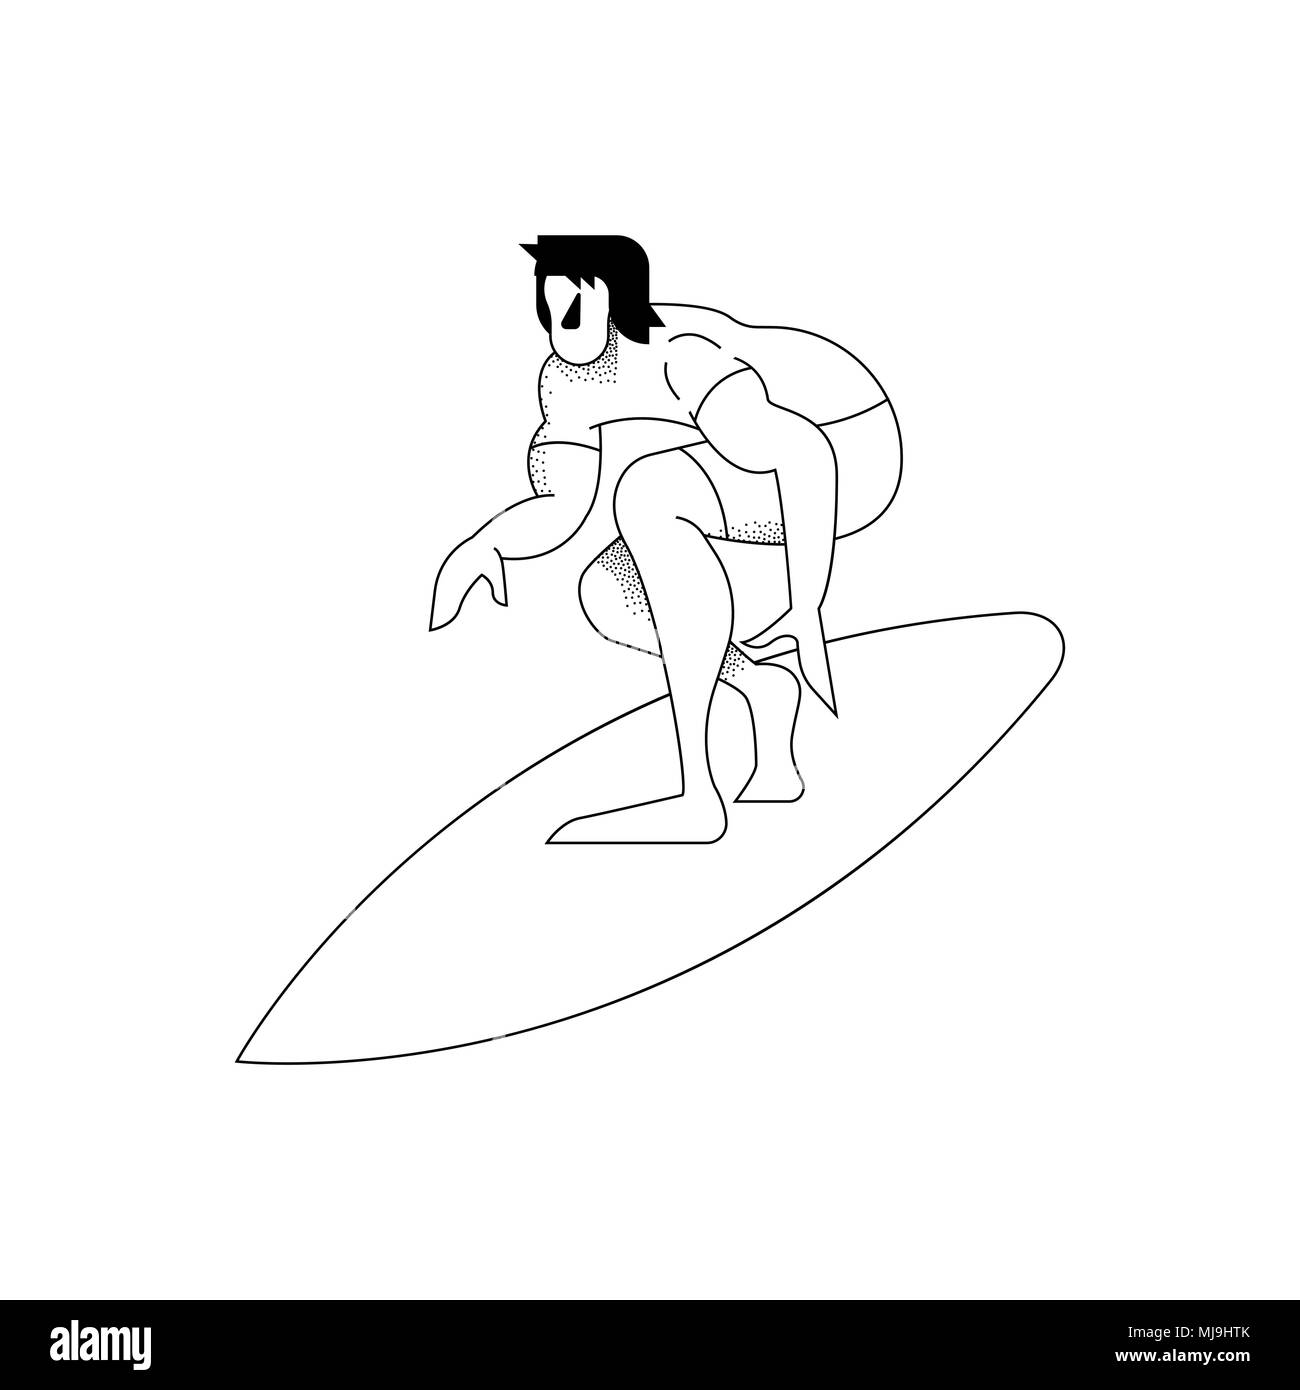 L'uomo surf, moderno in bianco e nero in stile contorno. Surfer barreling pongono in azione su sfondo isolato. EPS10 vettore. Illustrazione Vettoriale